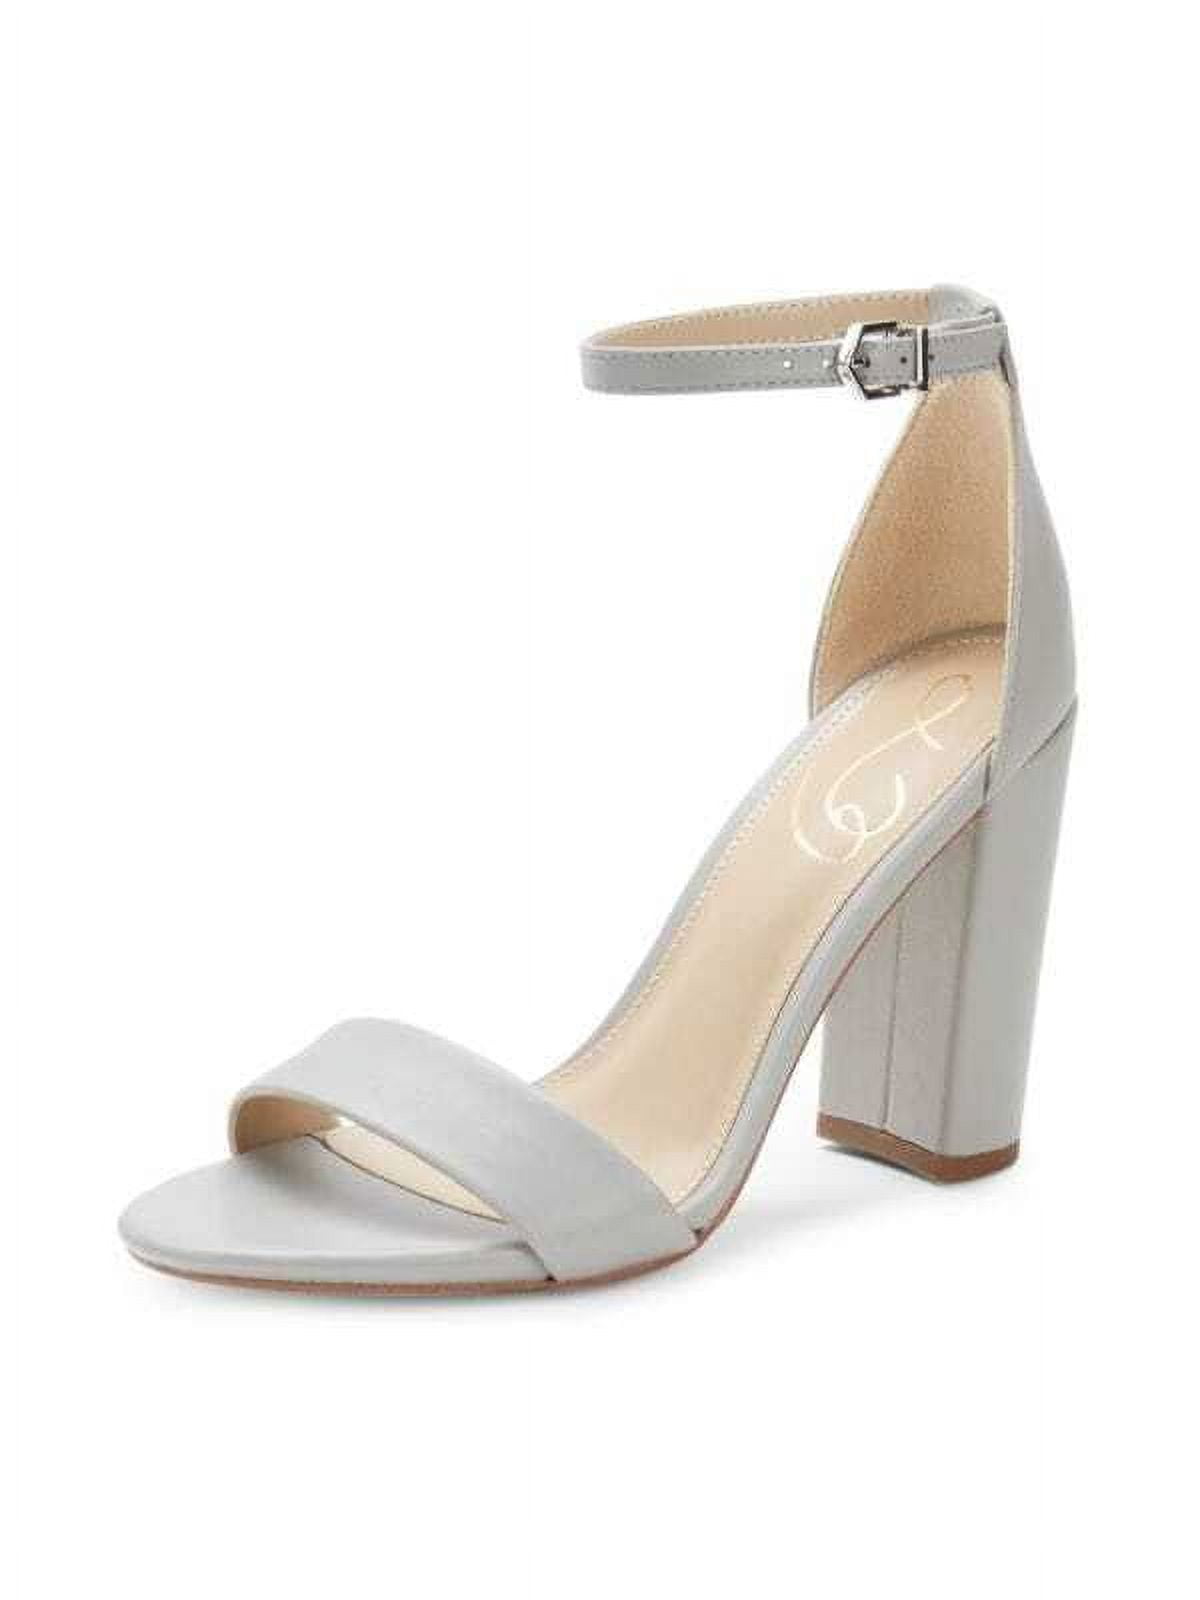 Buy Inc 5 Women Grey Solid Block Heels - Heels for Women 7266943 | Myntra